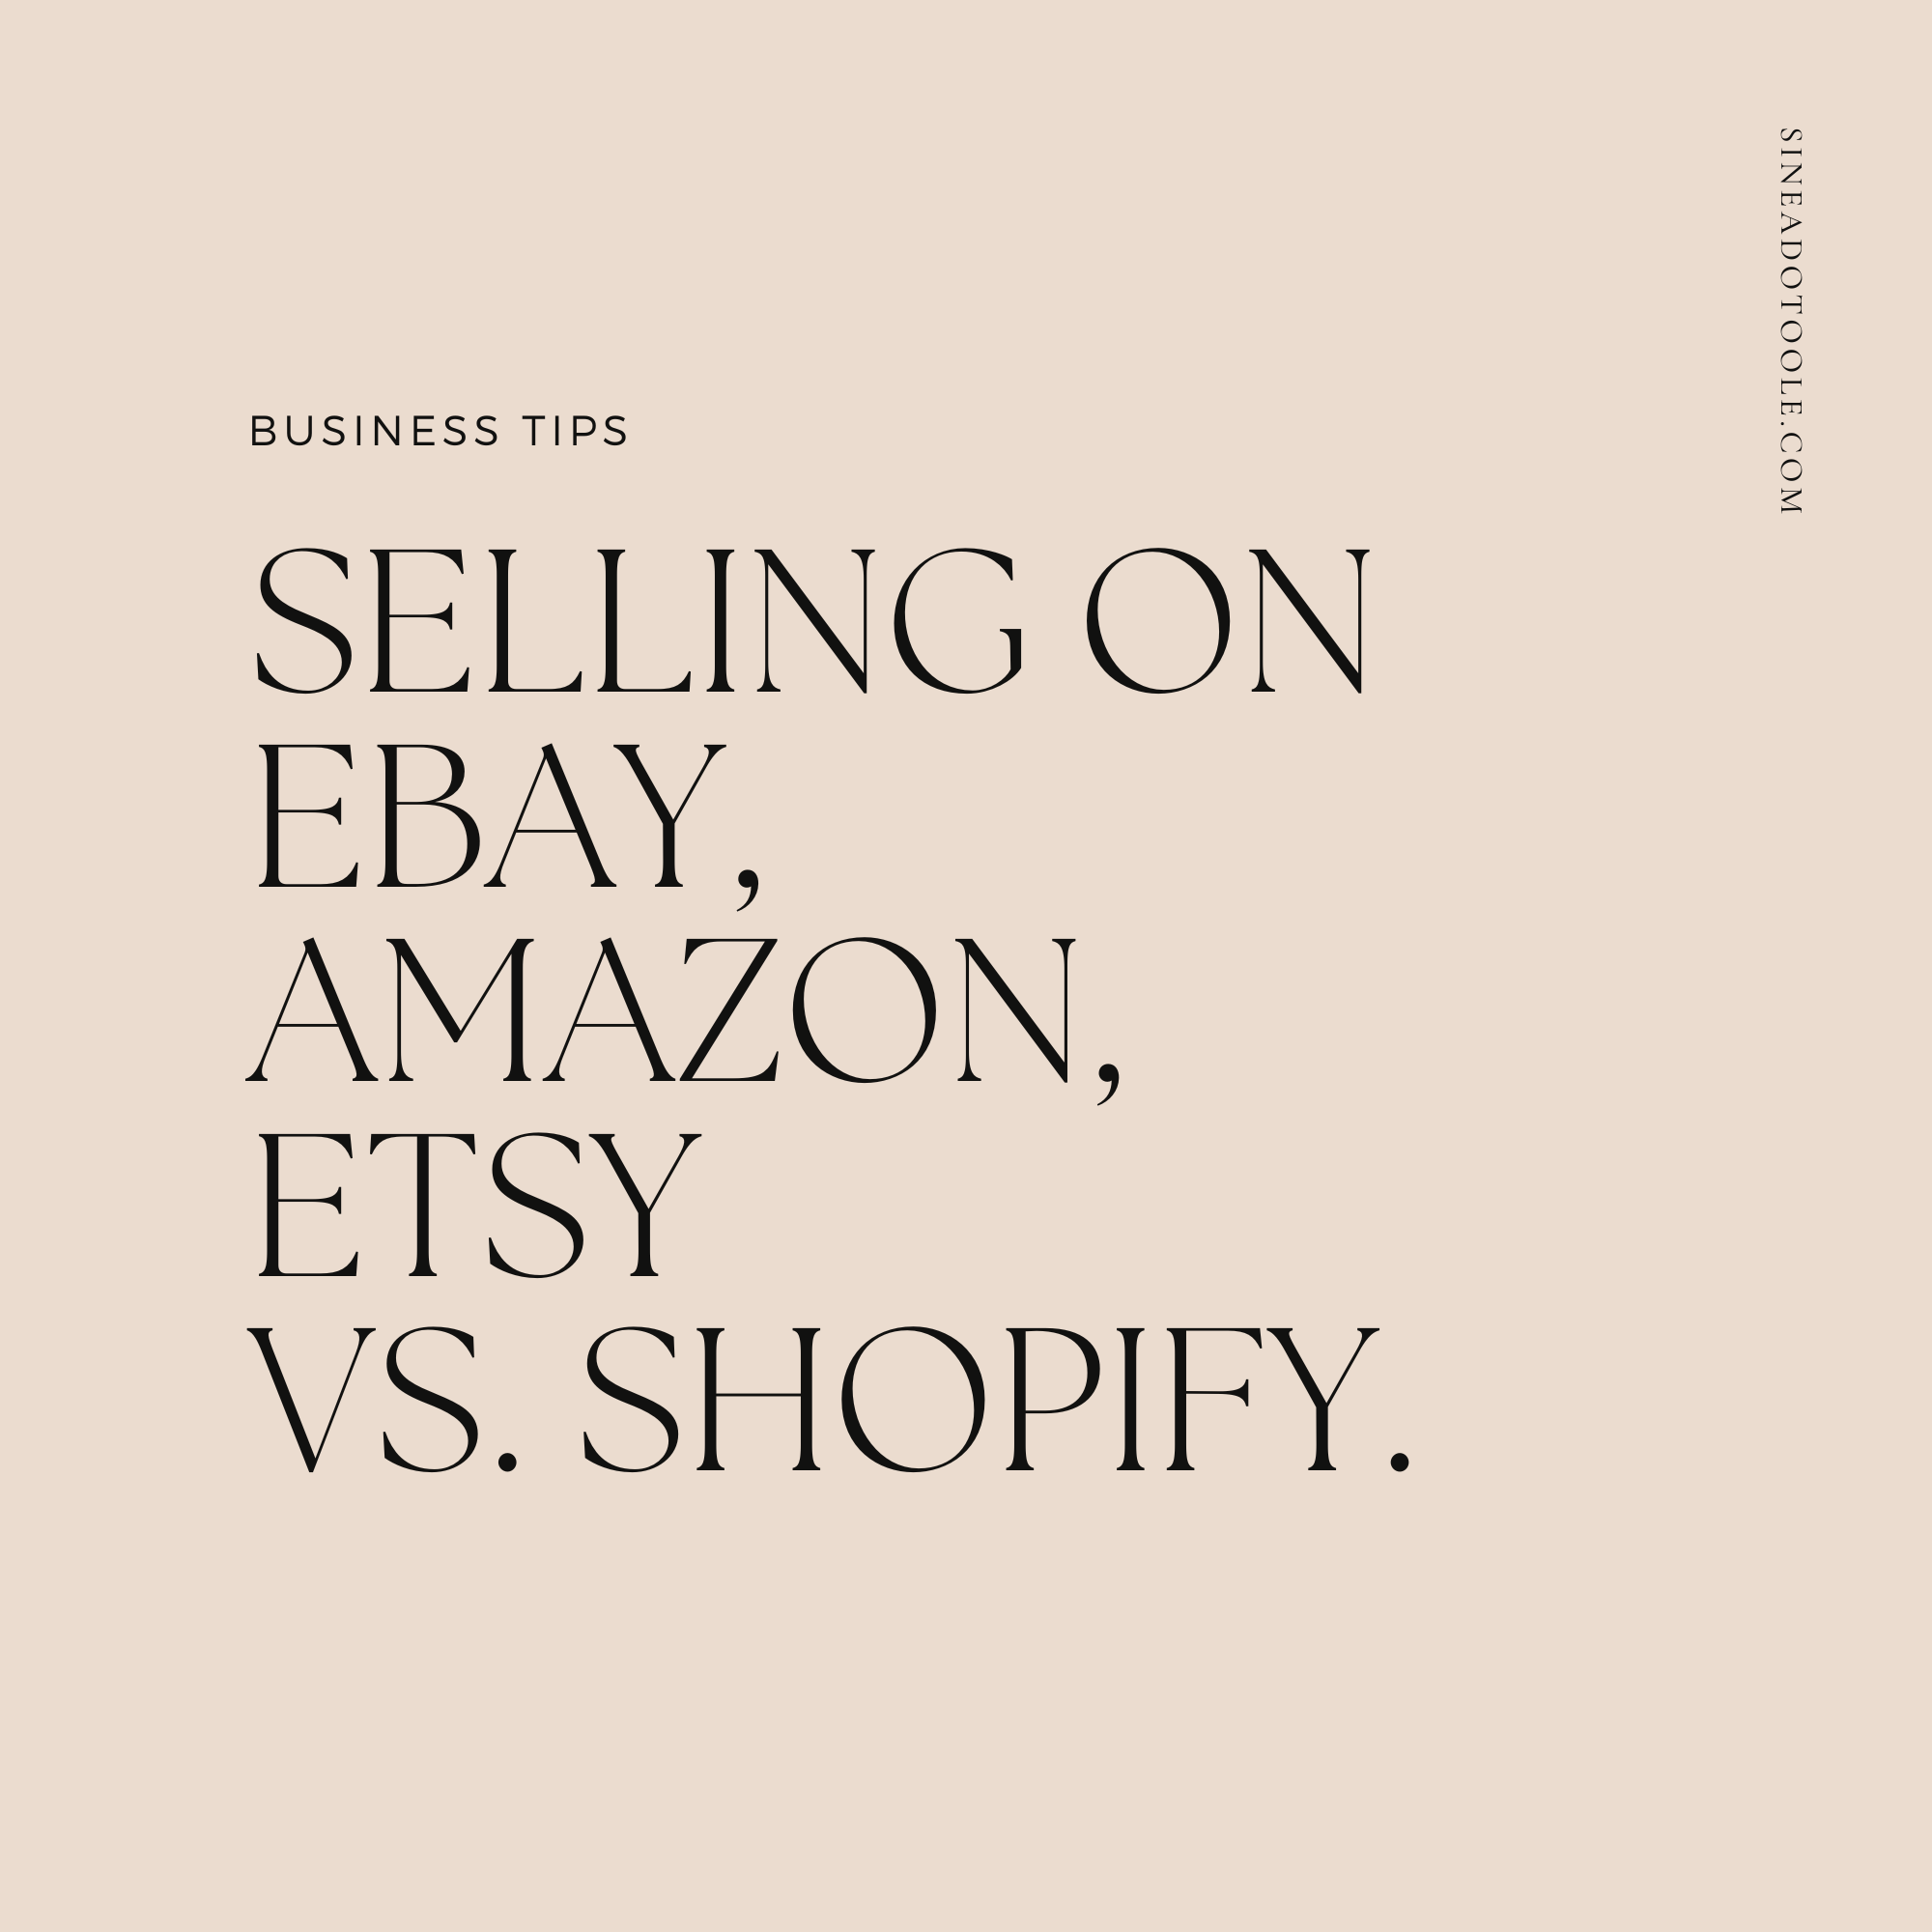 Selling on eBay, Amazon, Etsy vs. Shopify